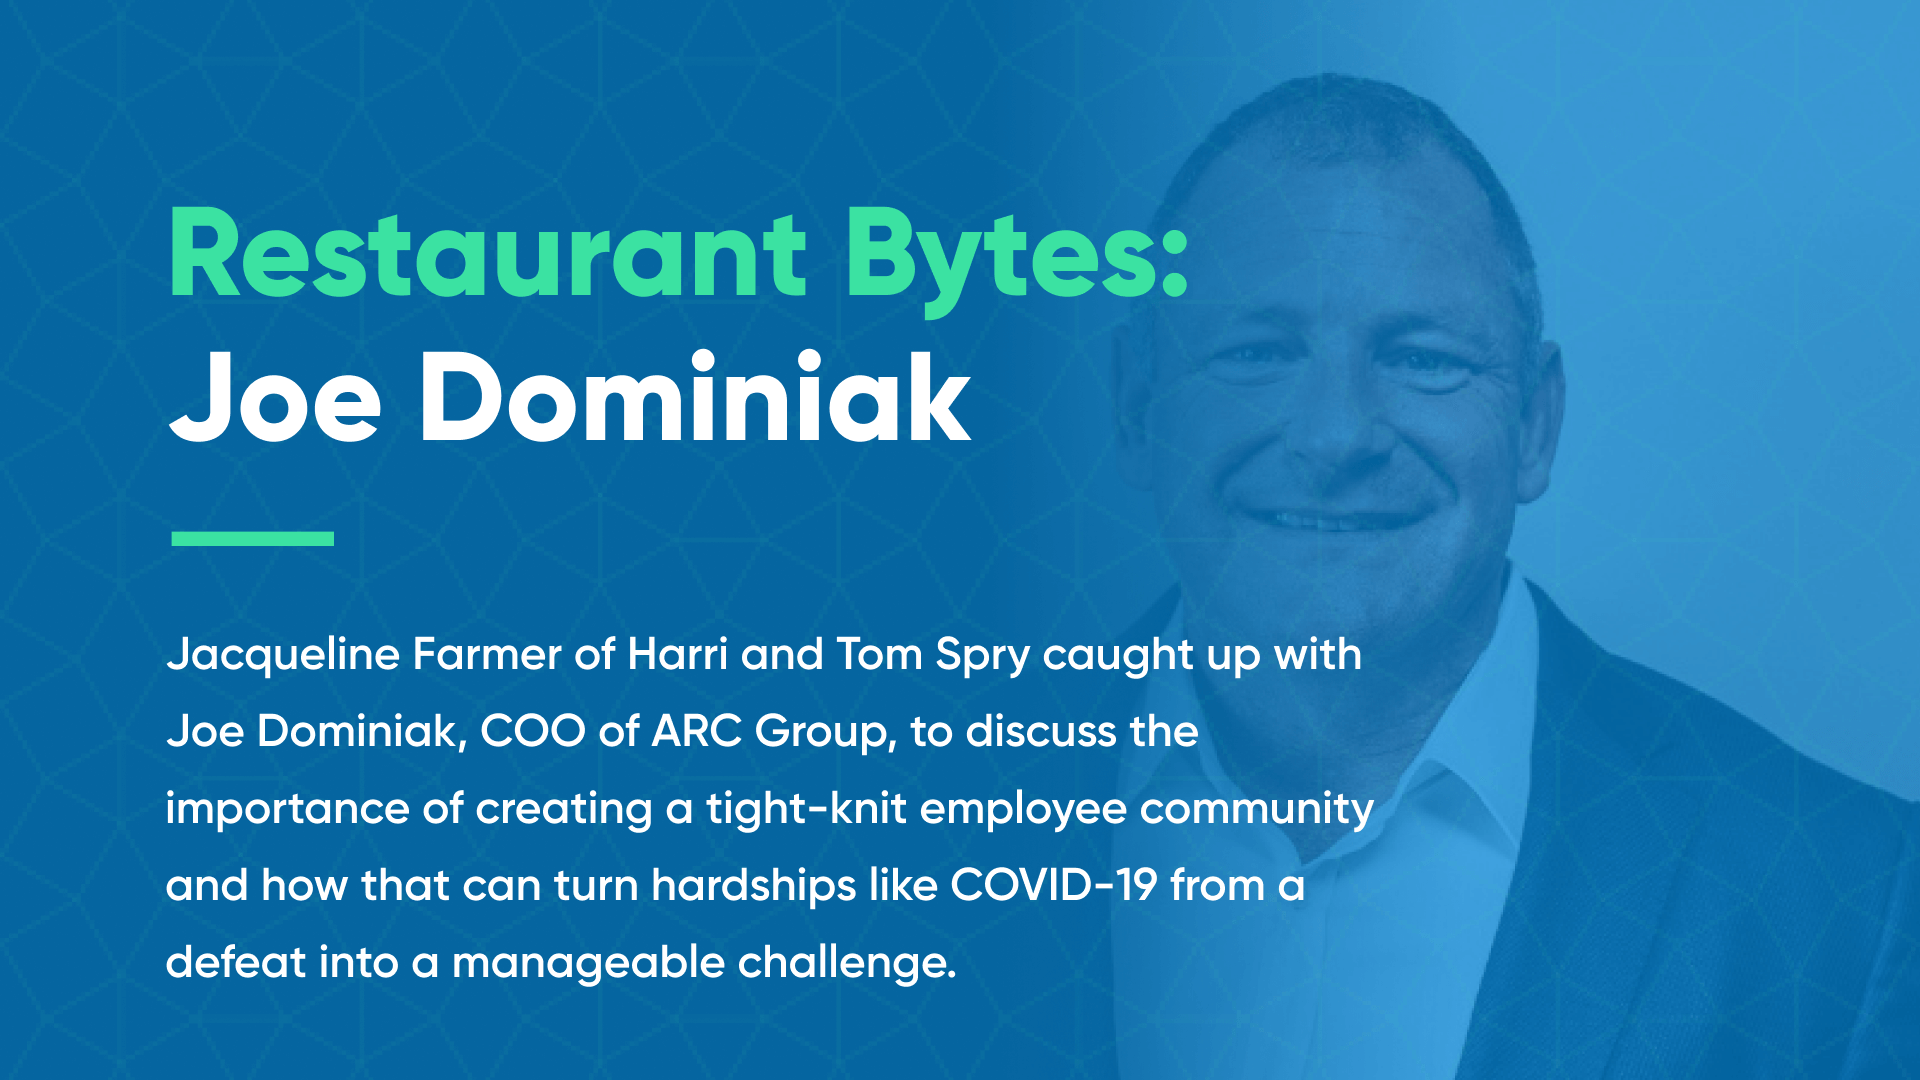 Harri Restaurant Bytes employee culture